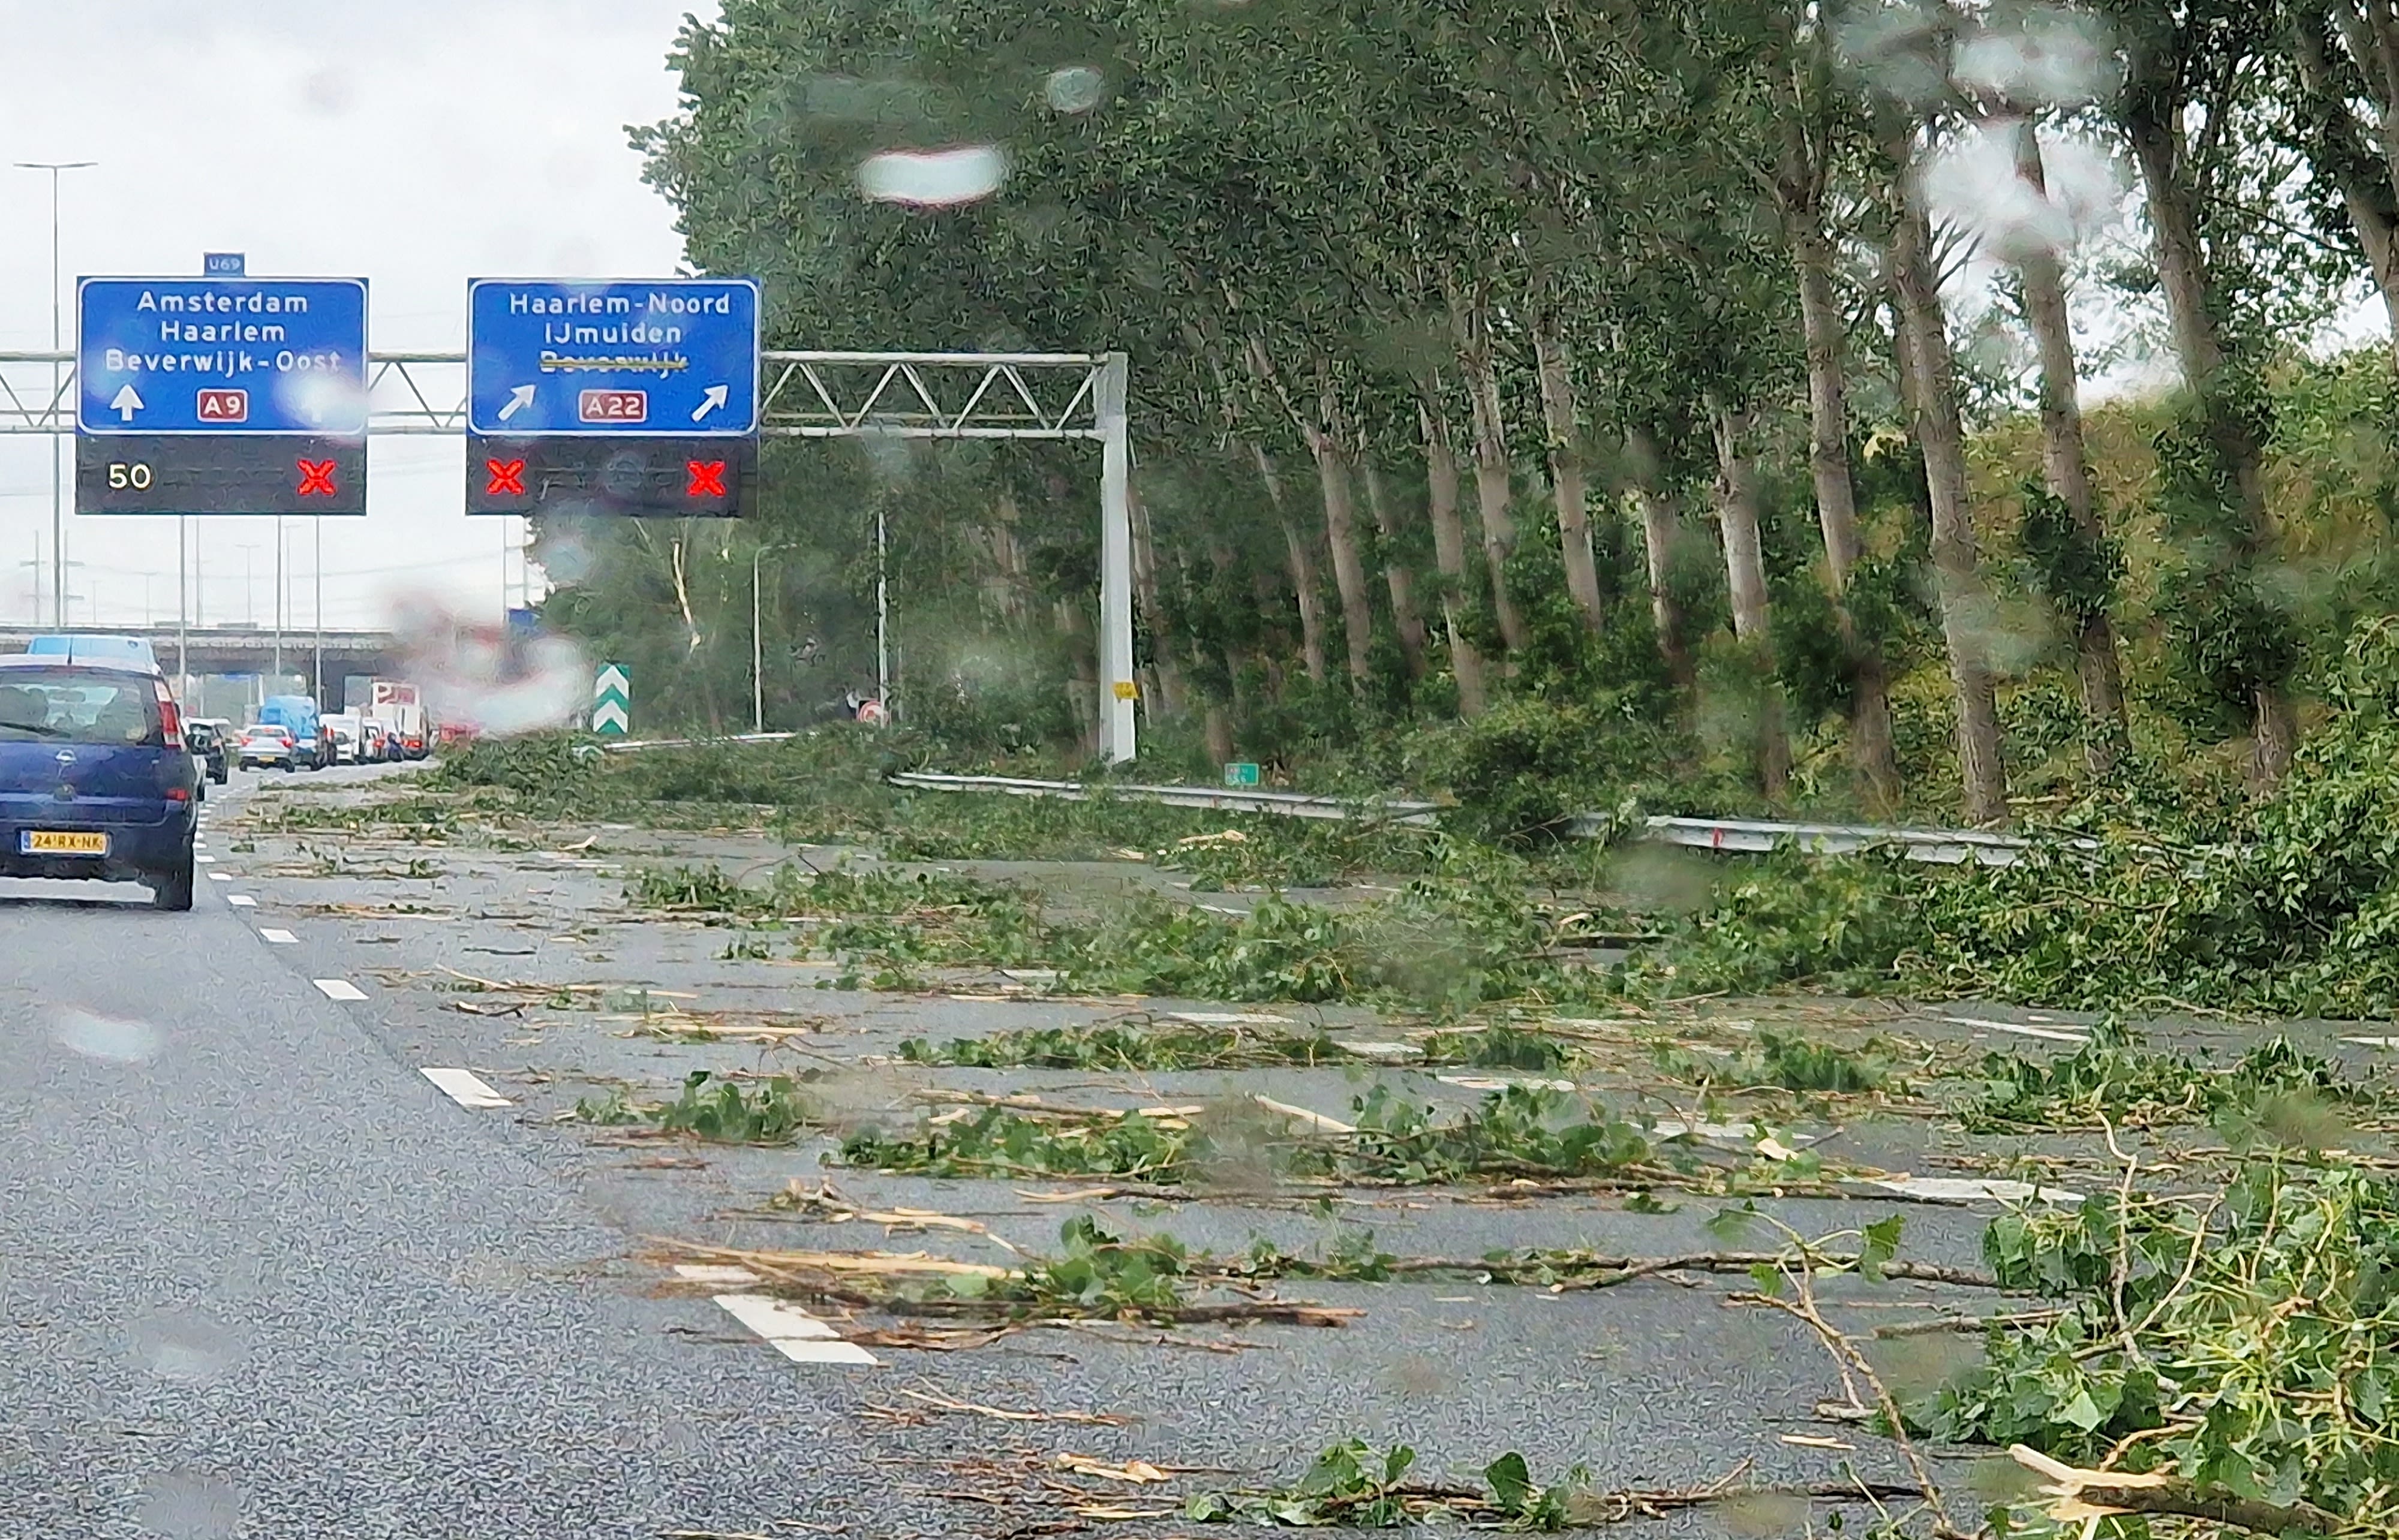 De A9 was volledig bezaaid met bomen toen zomerstorm Poly over trok. Foto: Wouter van Bernebeek